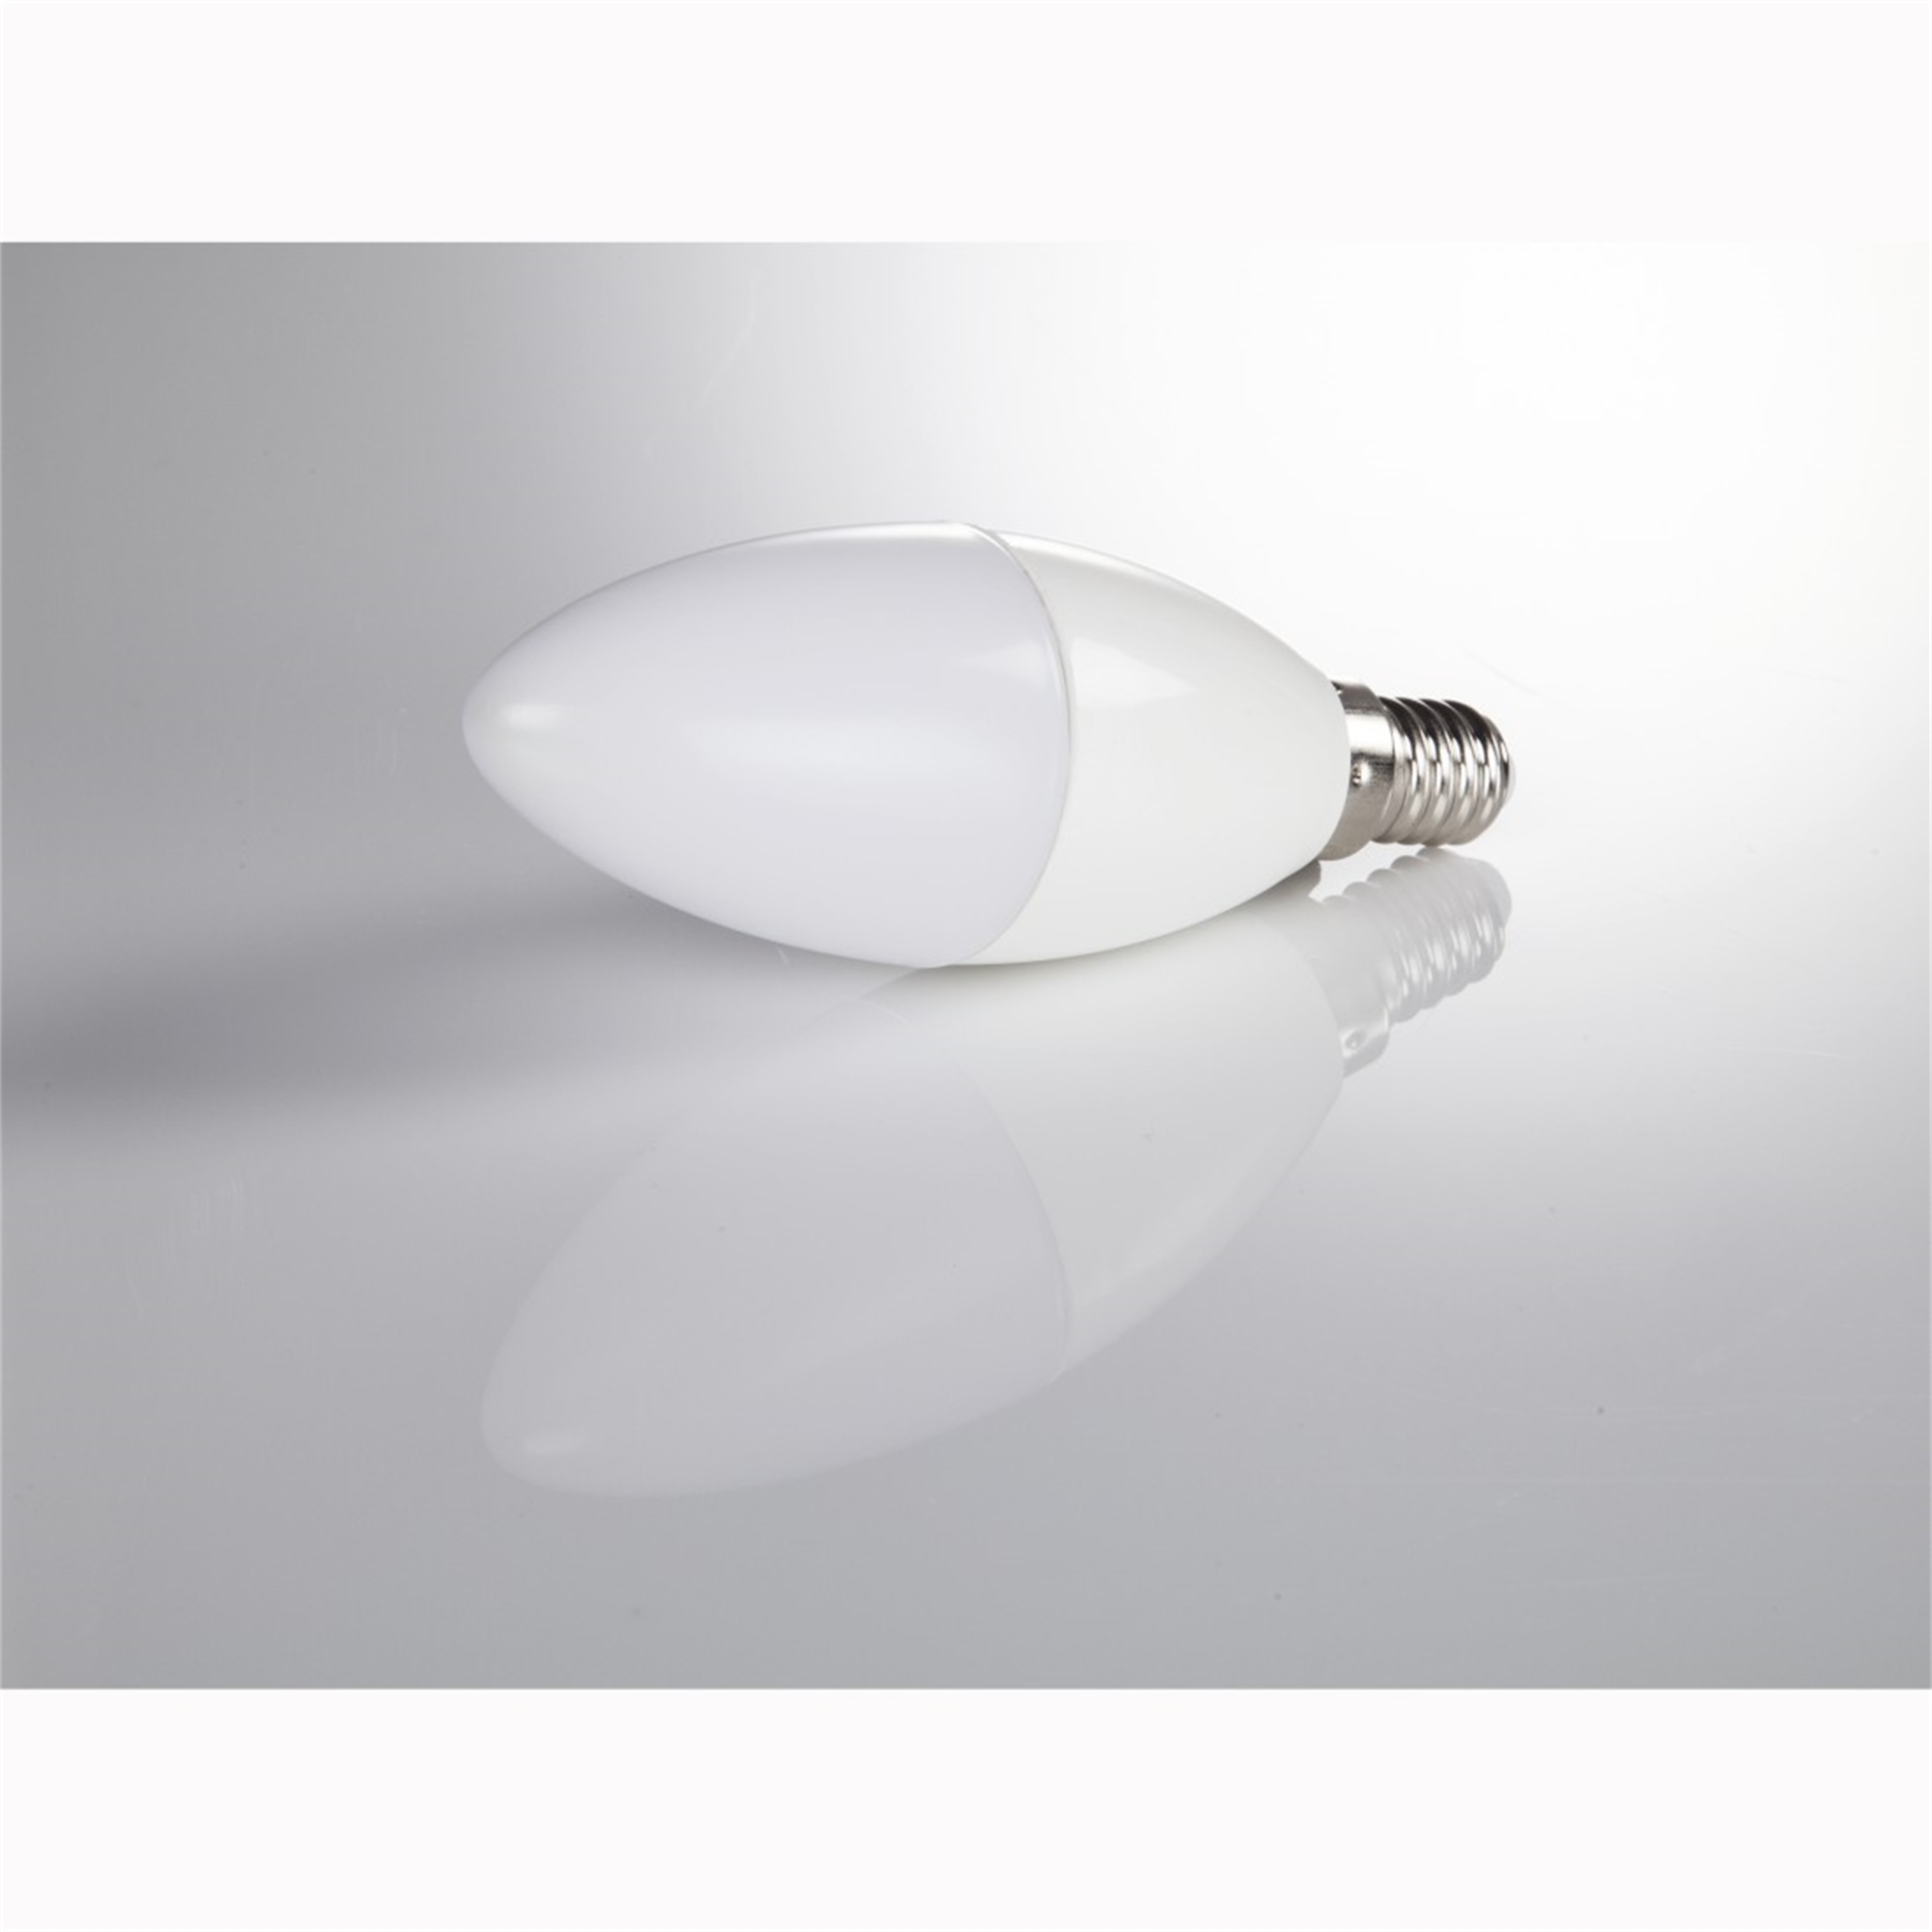 ersetzt XAVAX Warmweiß 470lm E14 LED-Lampe E14, 40W